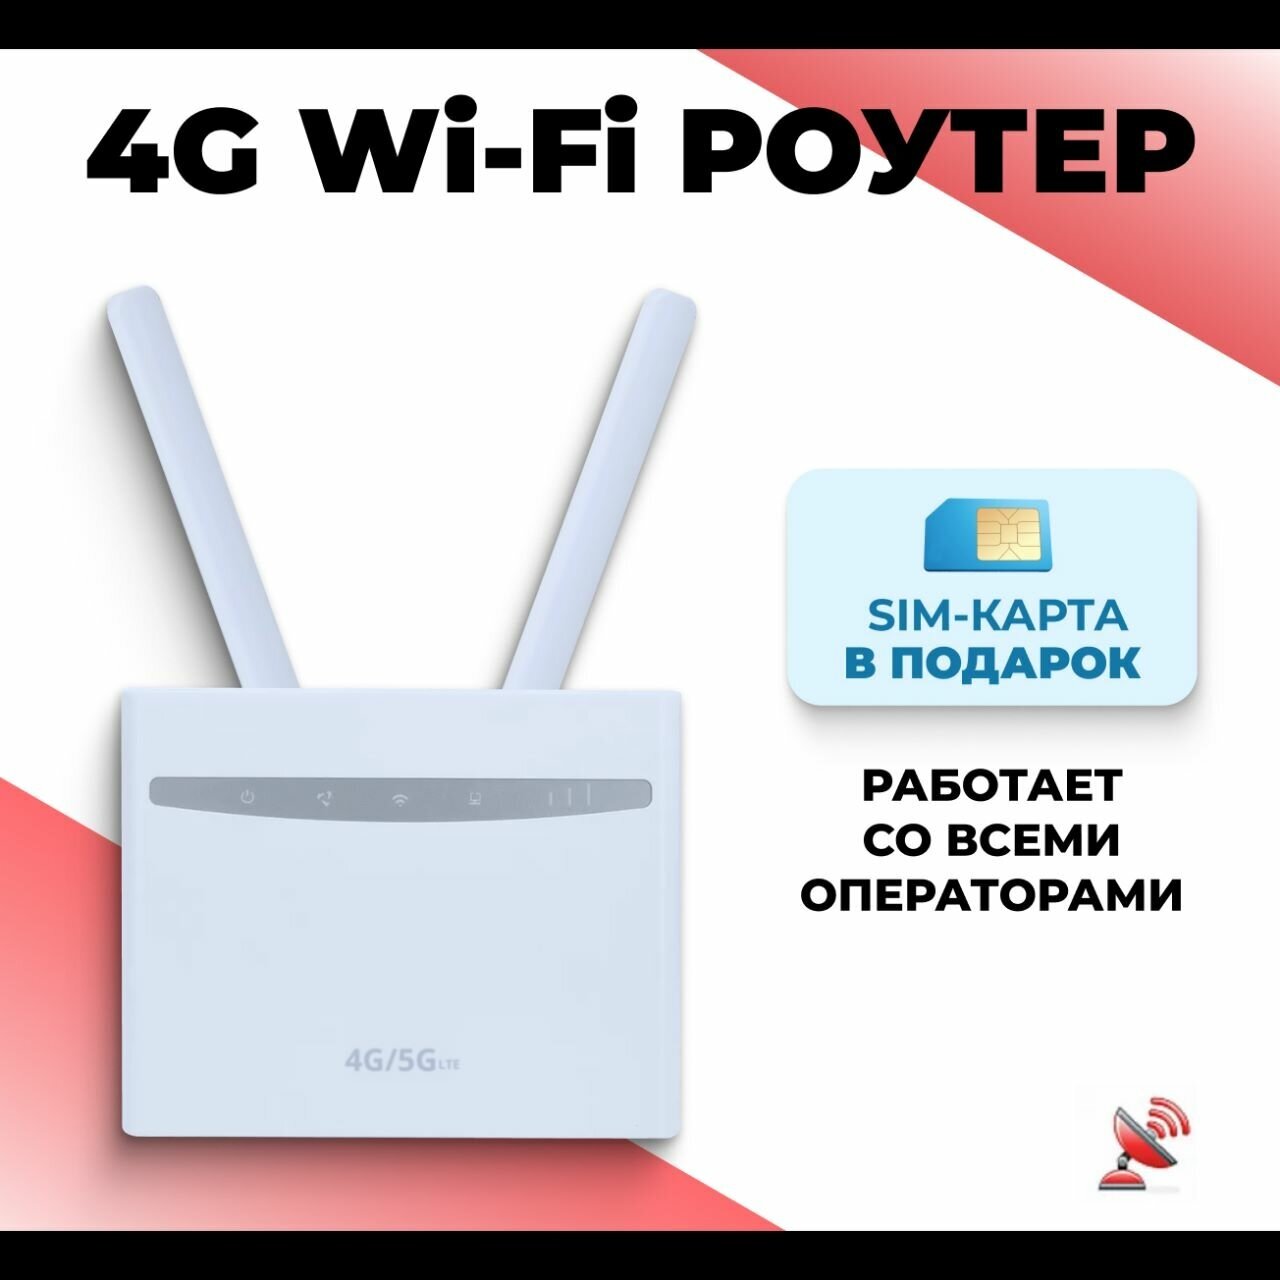 Wi-fi роутер 3G/4G CPE 525 + СИМ карта В подарок!